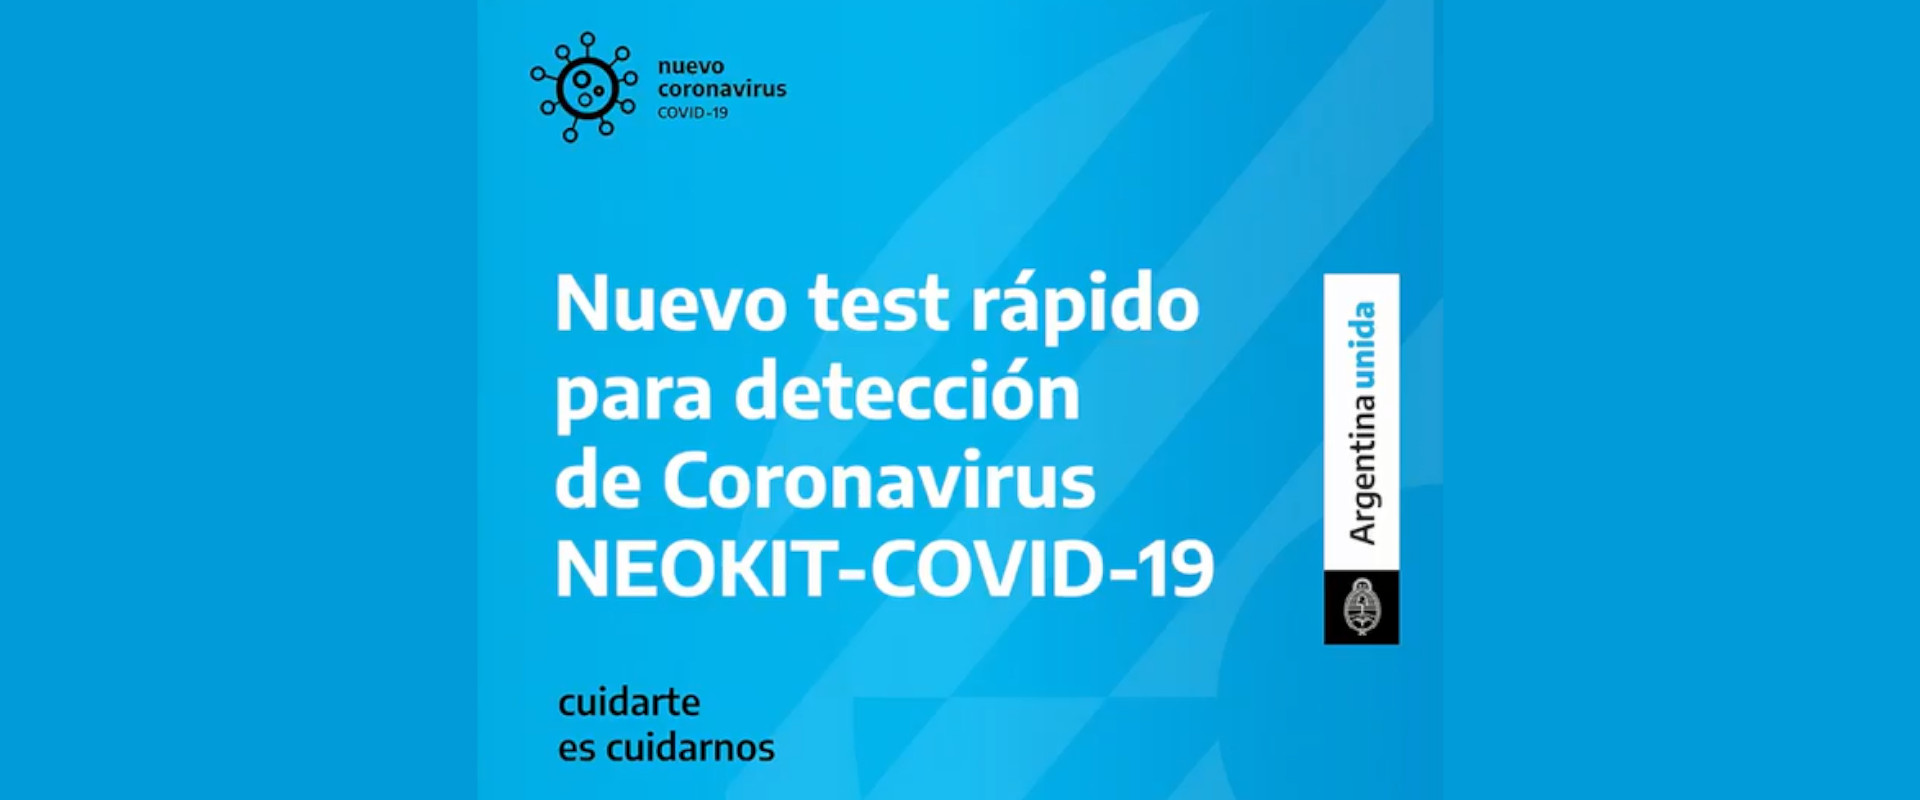 Científicos y científicas de nuestro país crearon el nuevo test de diagnóstico rápido "NEOKIT-COVID-19"